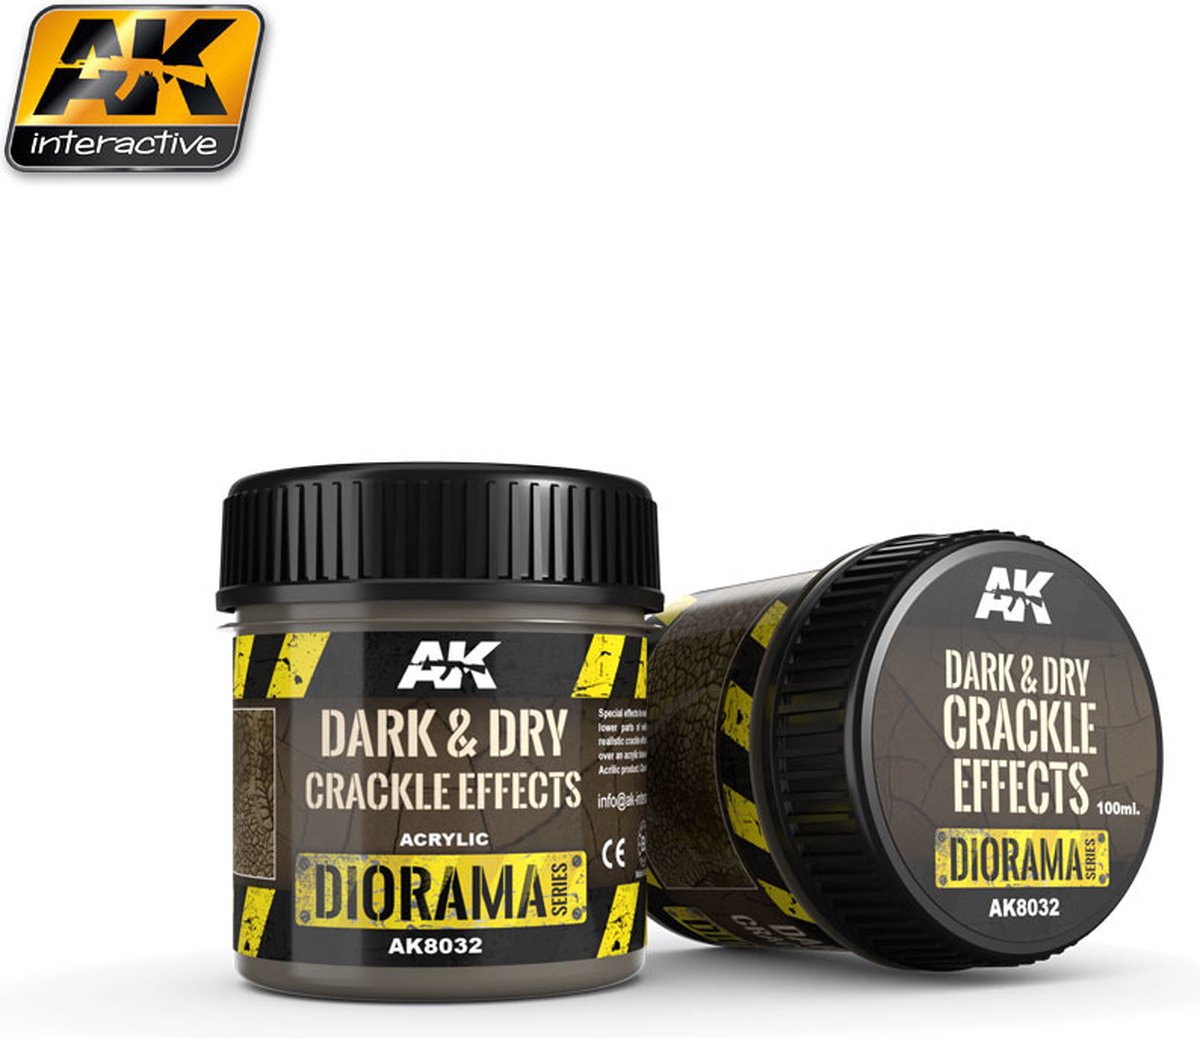 Dark & Dry Crackle Effects - 100ml (Acrylic) - AK-8032